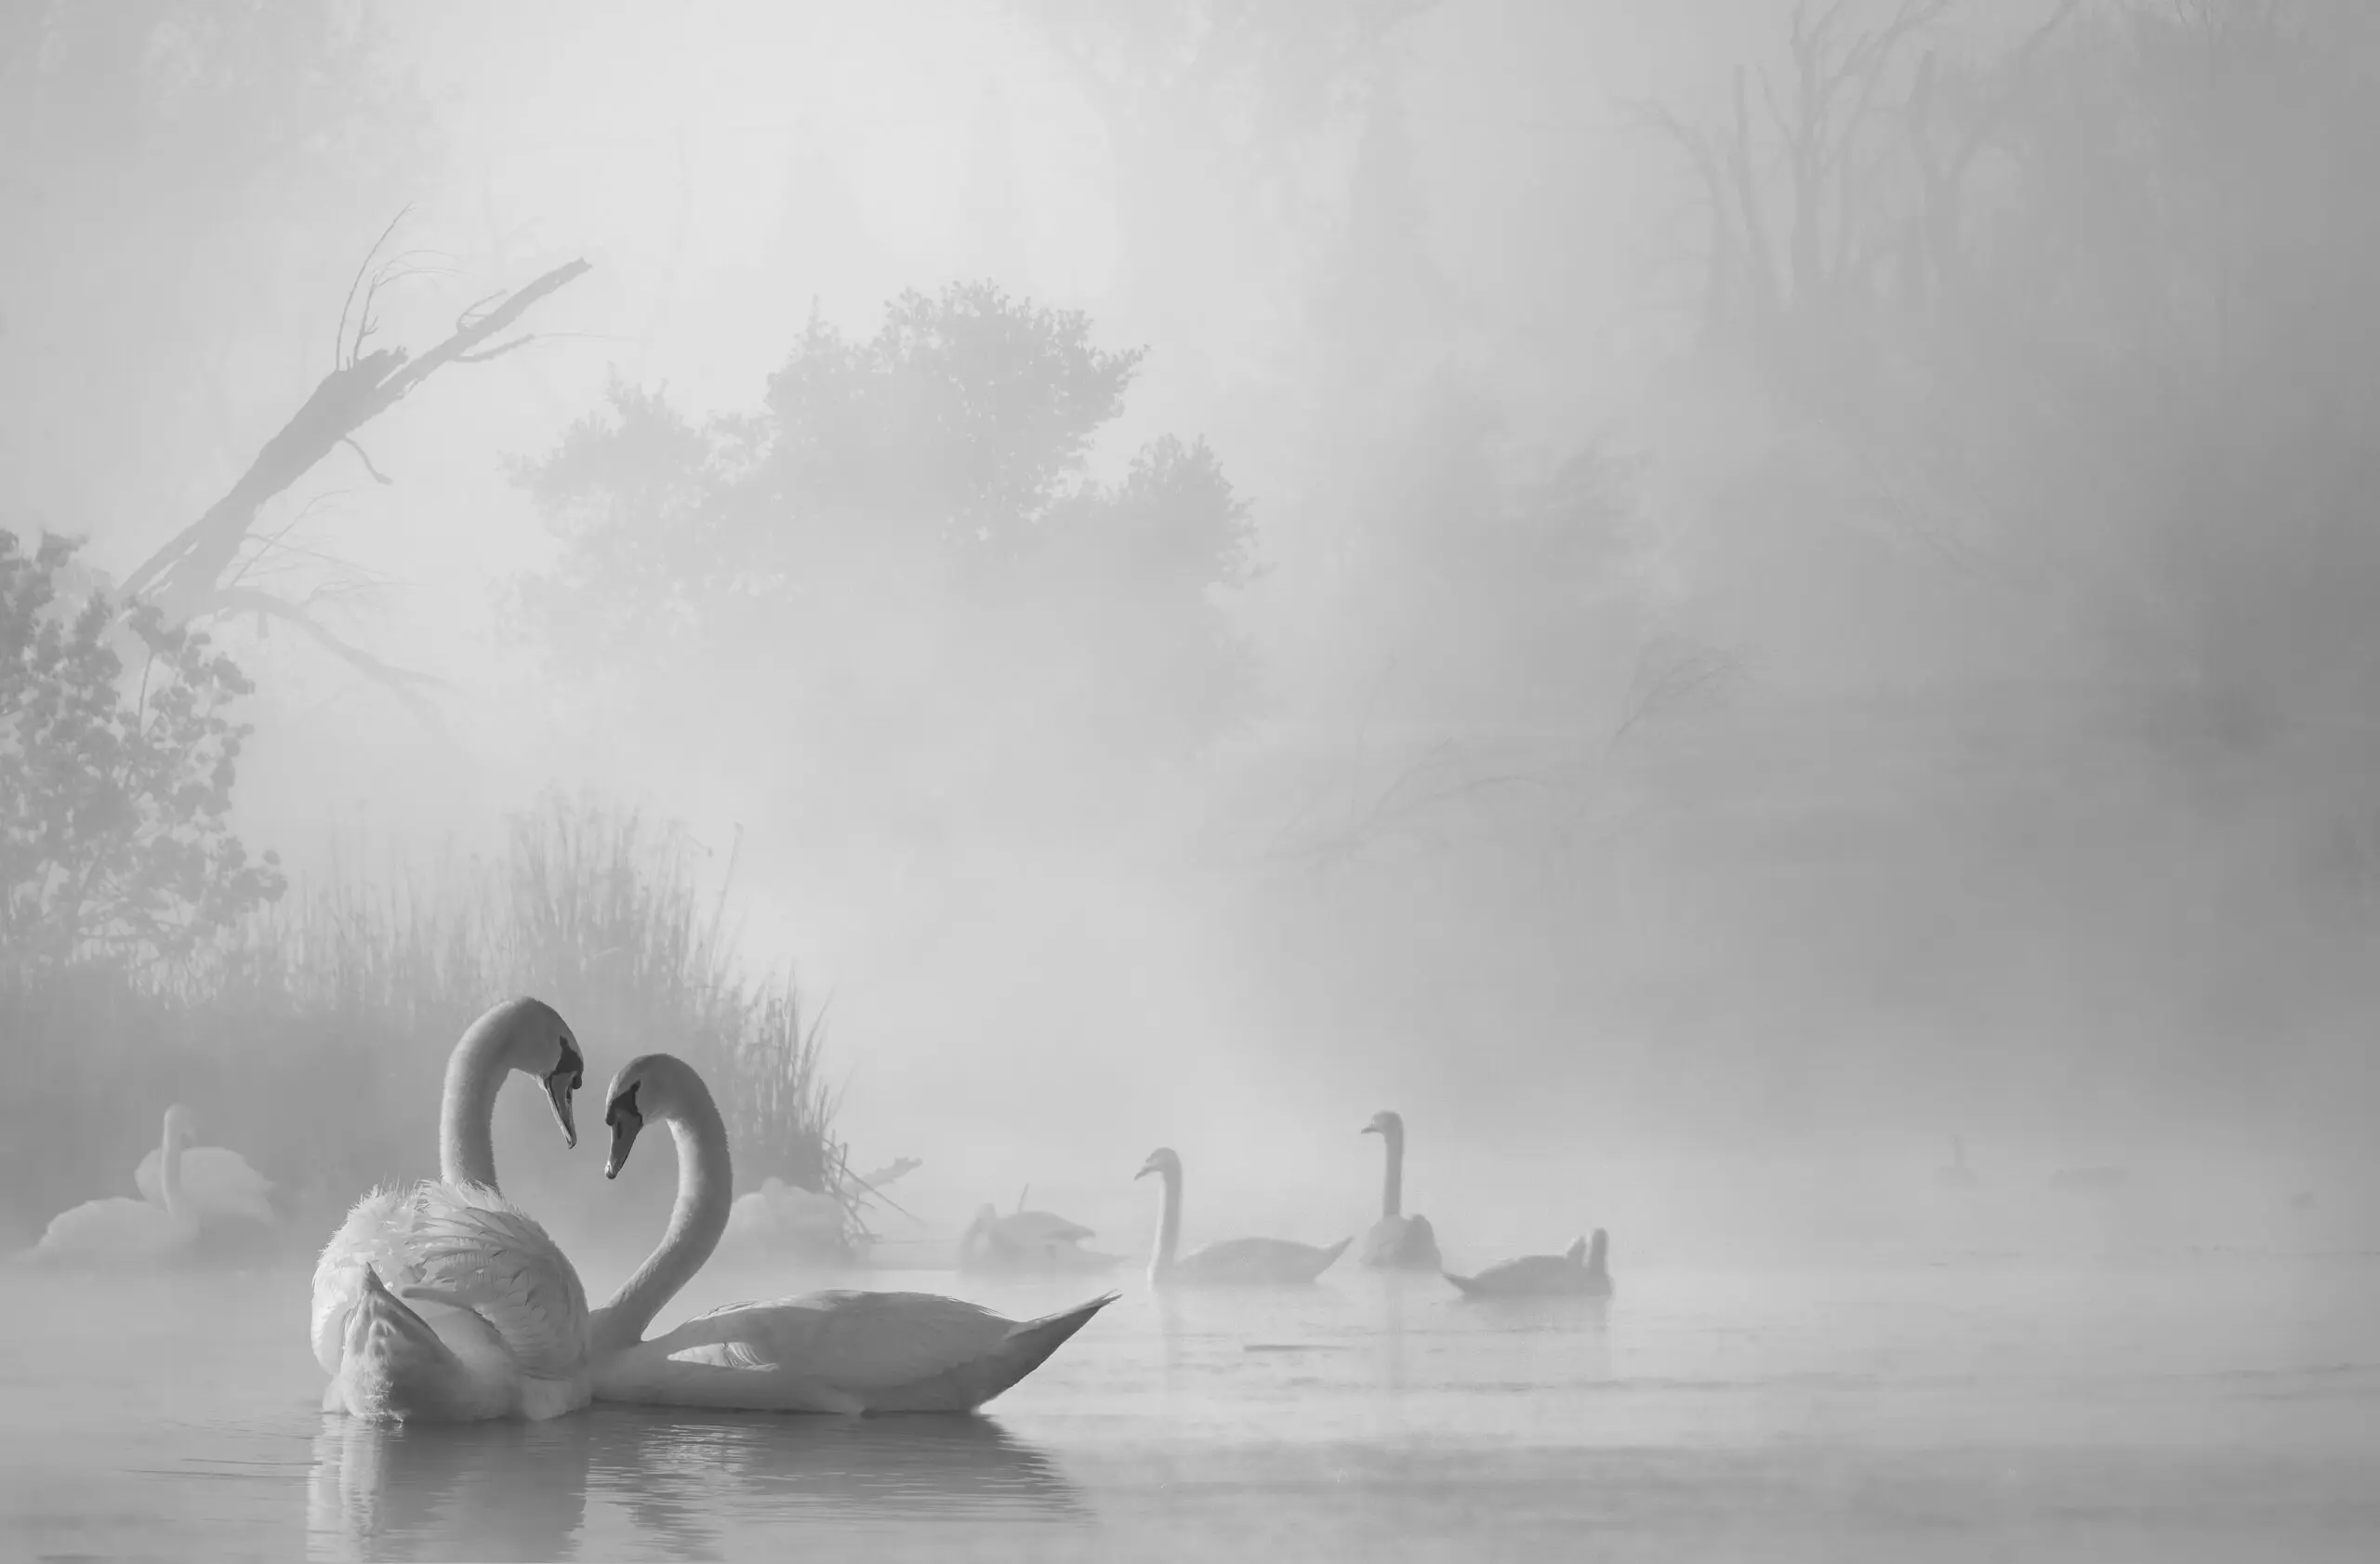 Wandbild (19379) morning fog on swan lake by Liu Dawei präsentiert: Wasser,Tiere,Natur